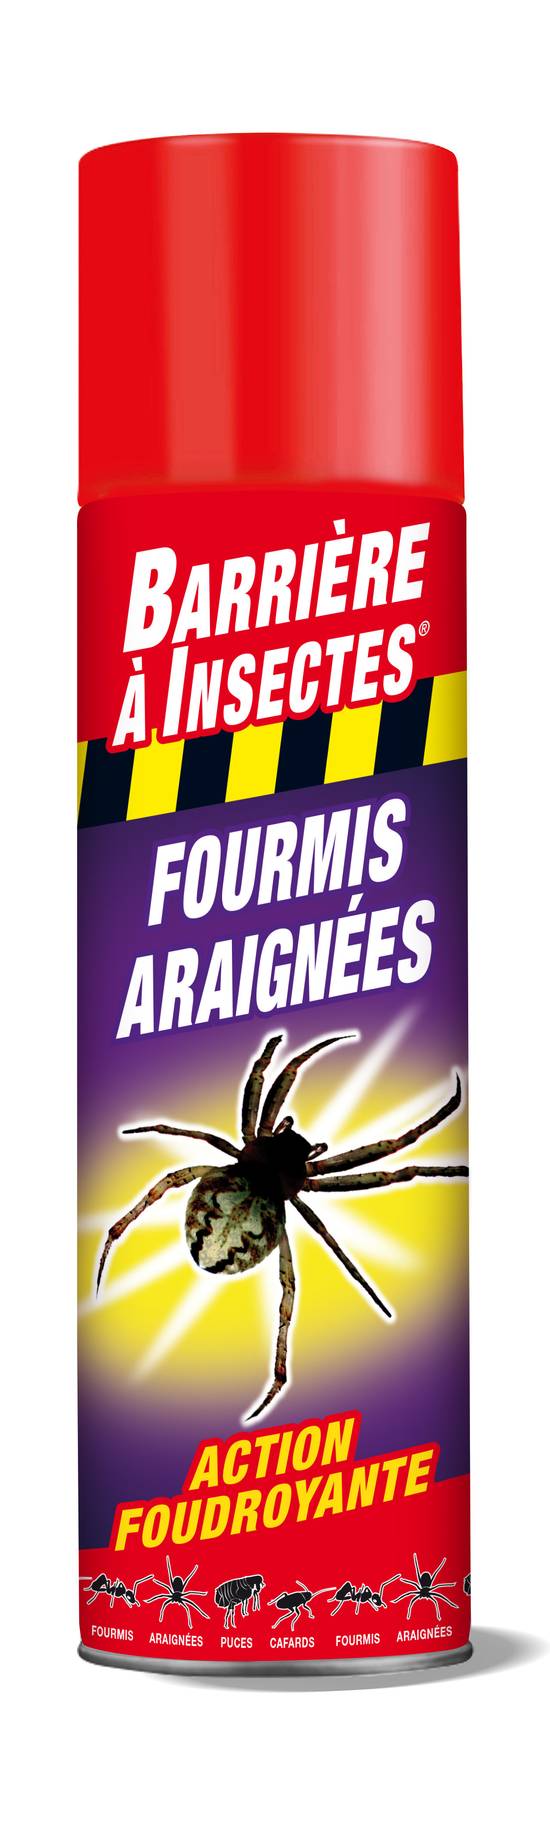 Barriere À Insectes - Anti insectes fourmis araignées